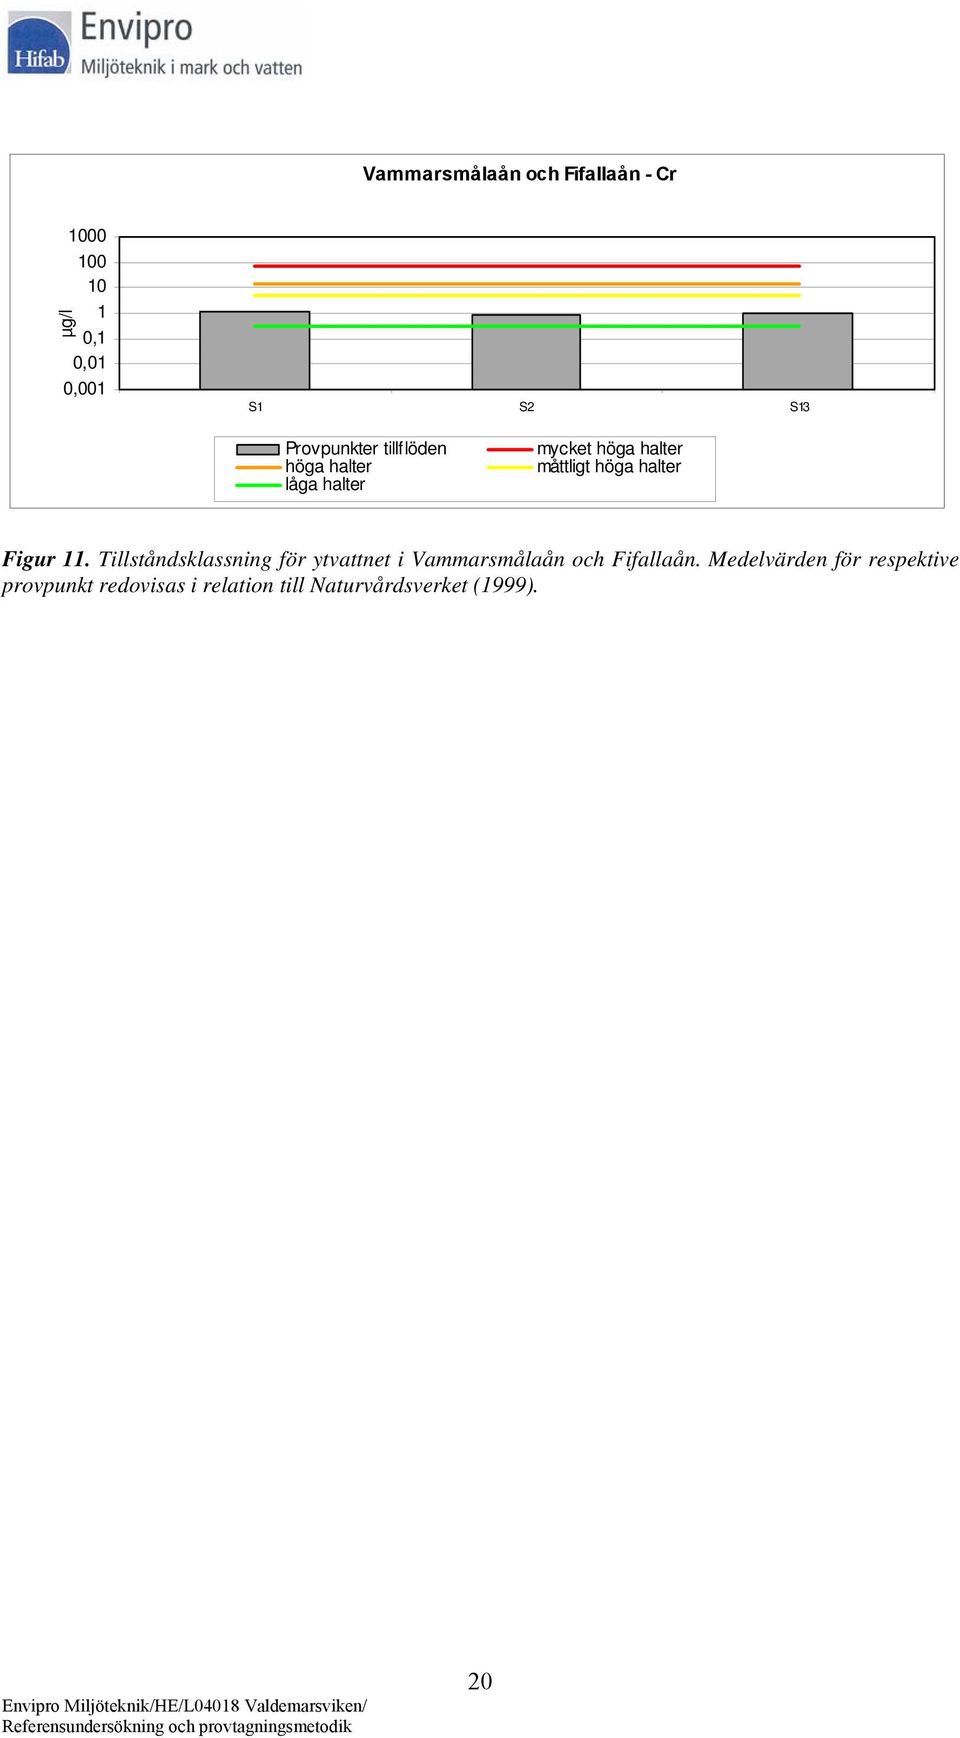 halter Figur 11. Tillståndsklassning för ytvattnet i Vammarsmålaån och Fifallaån.